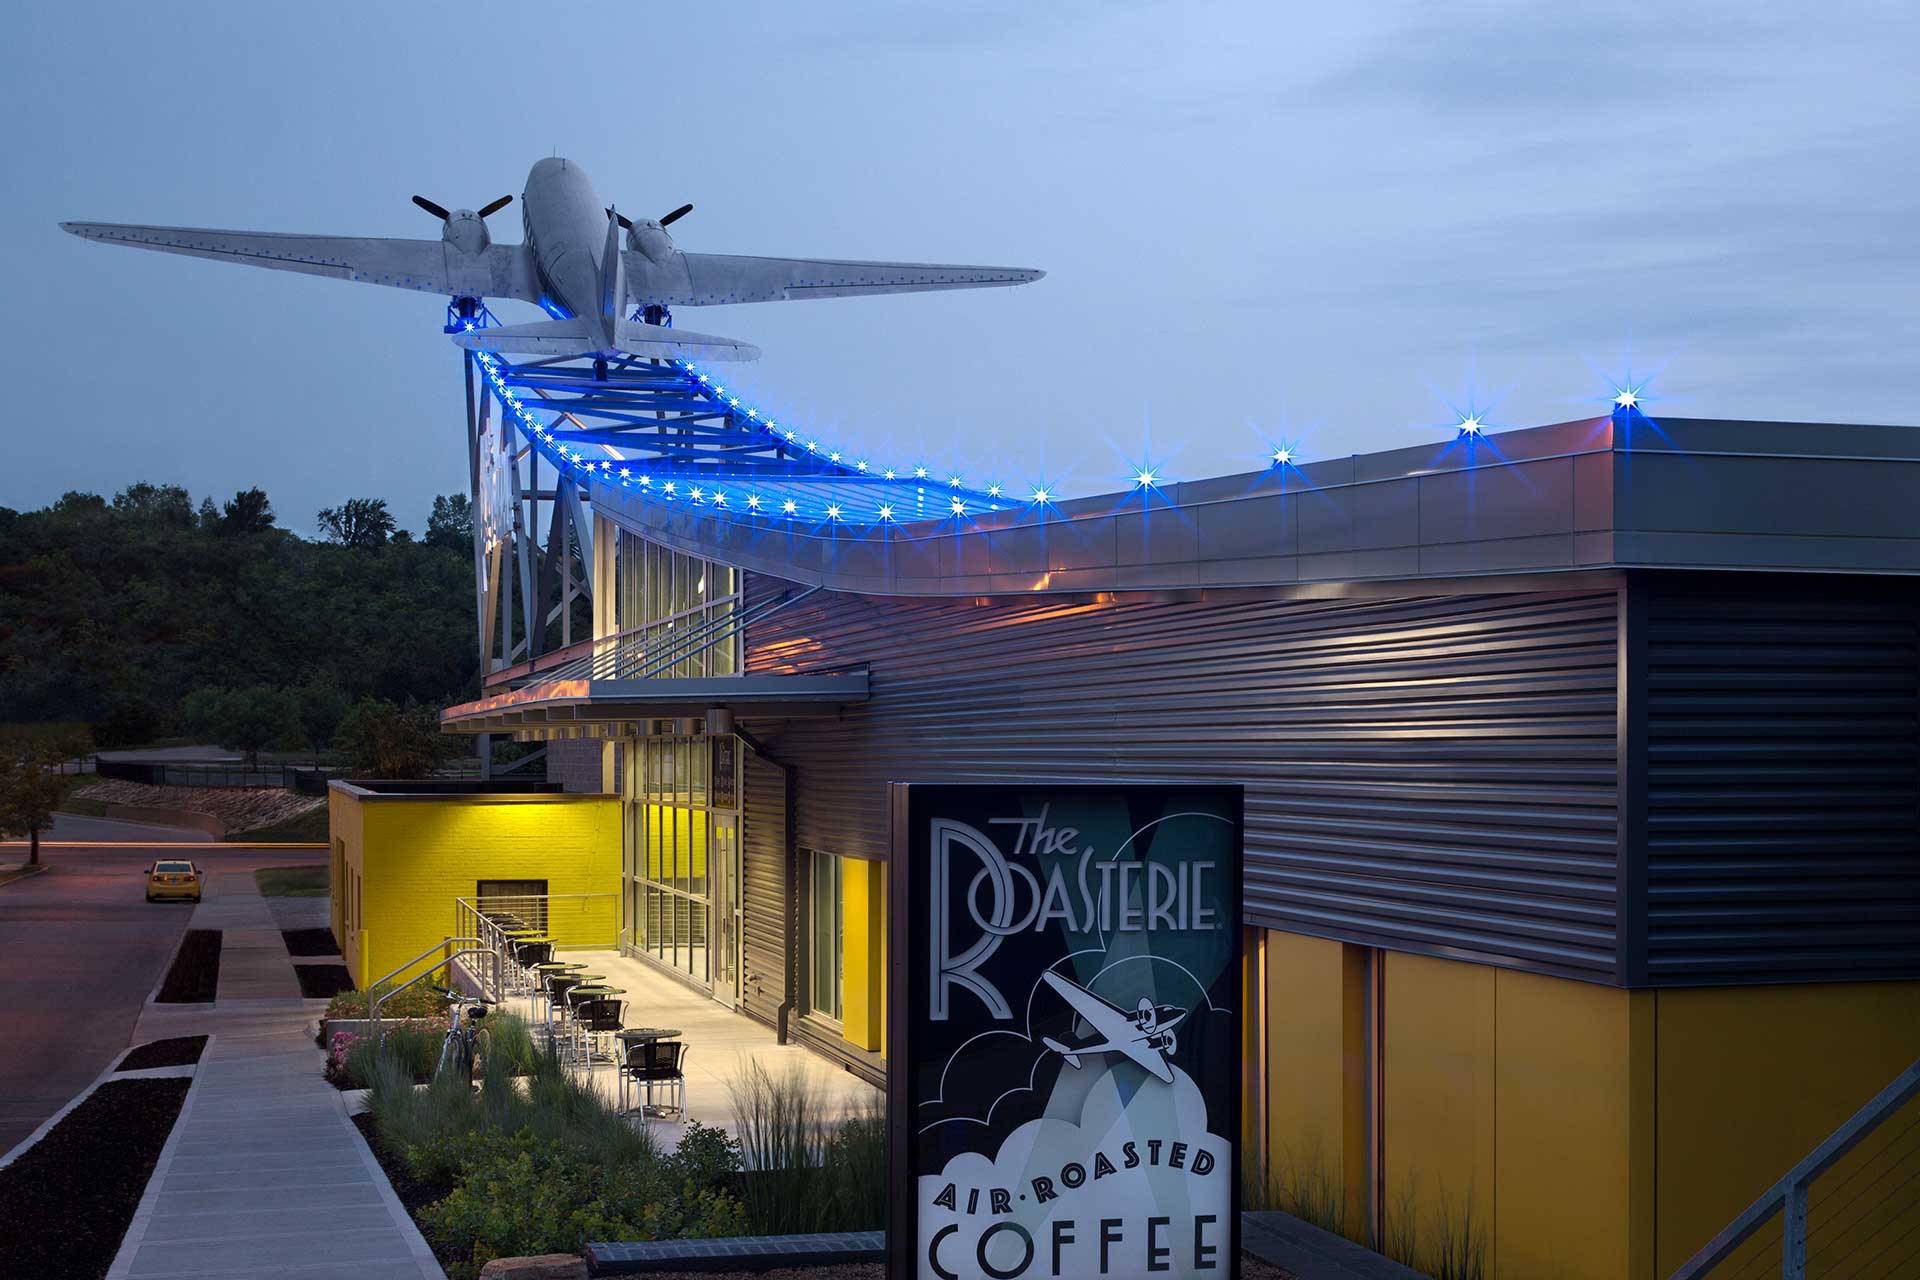 Palarnia kawy The Roasterie w Kansas City; w konstrukcję dachu wbudowany jest samolot z dwoma śmigłami